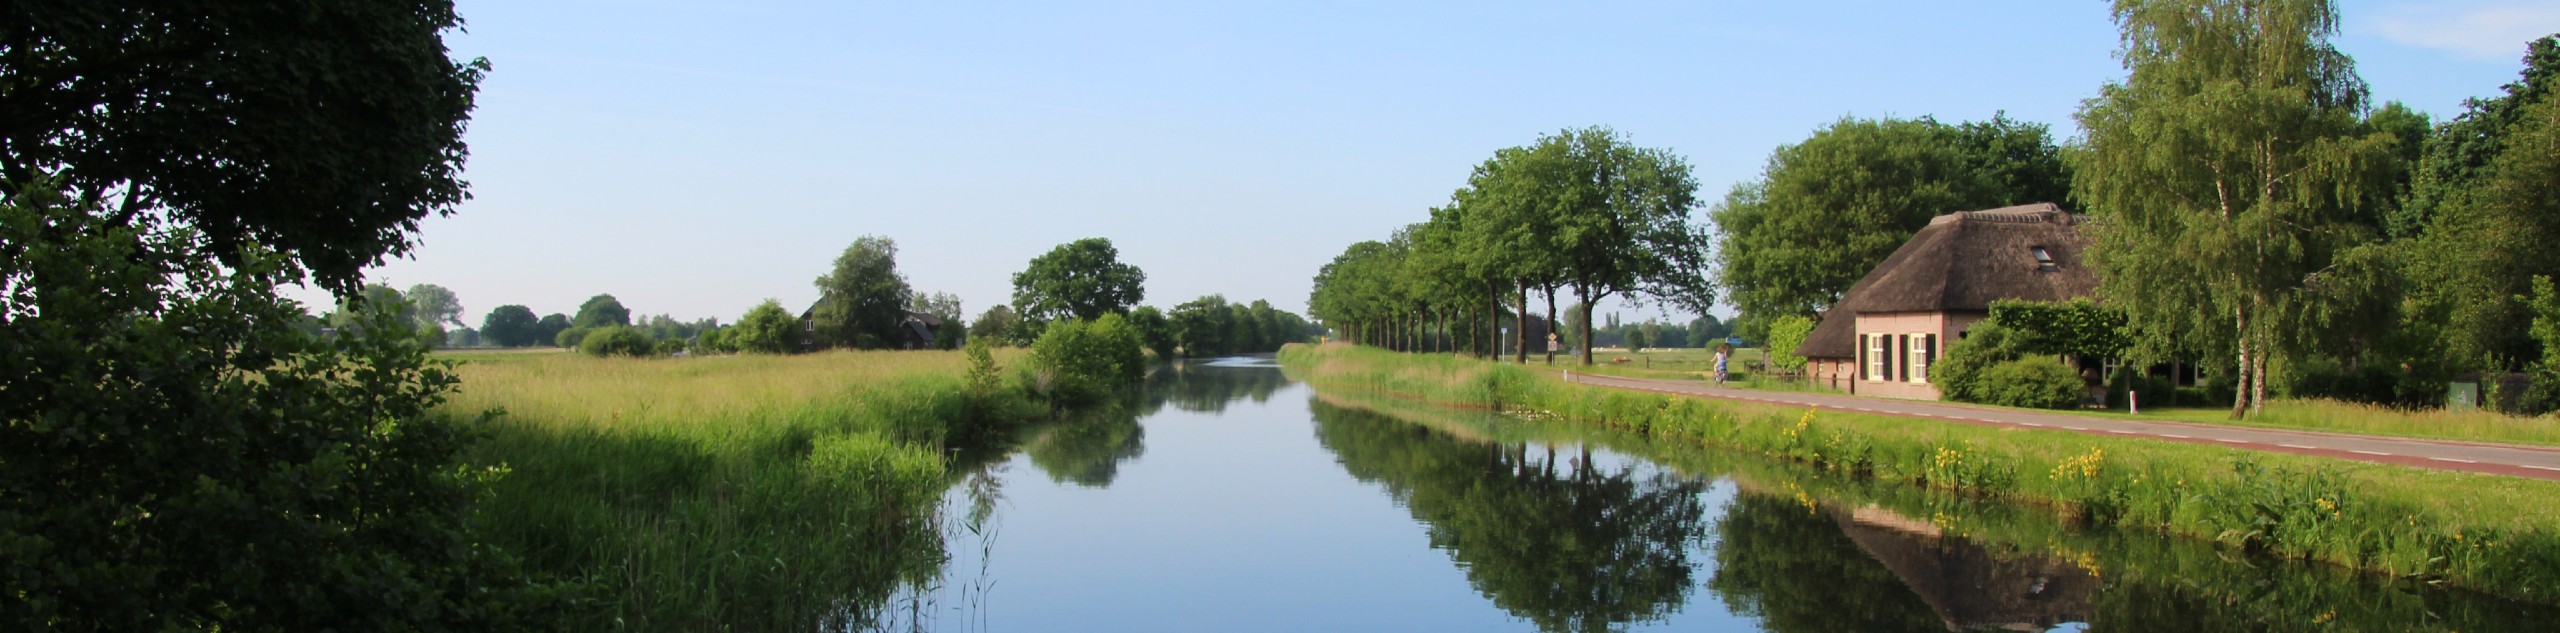 Channel in Gelderland